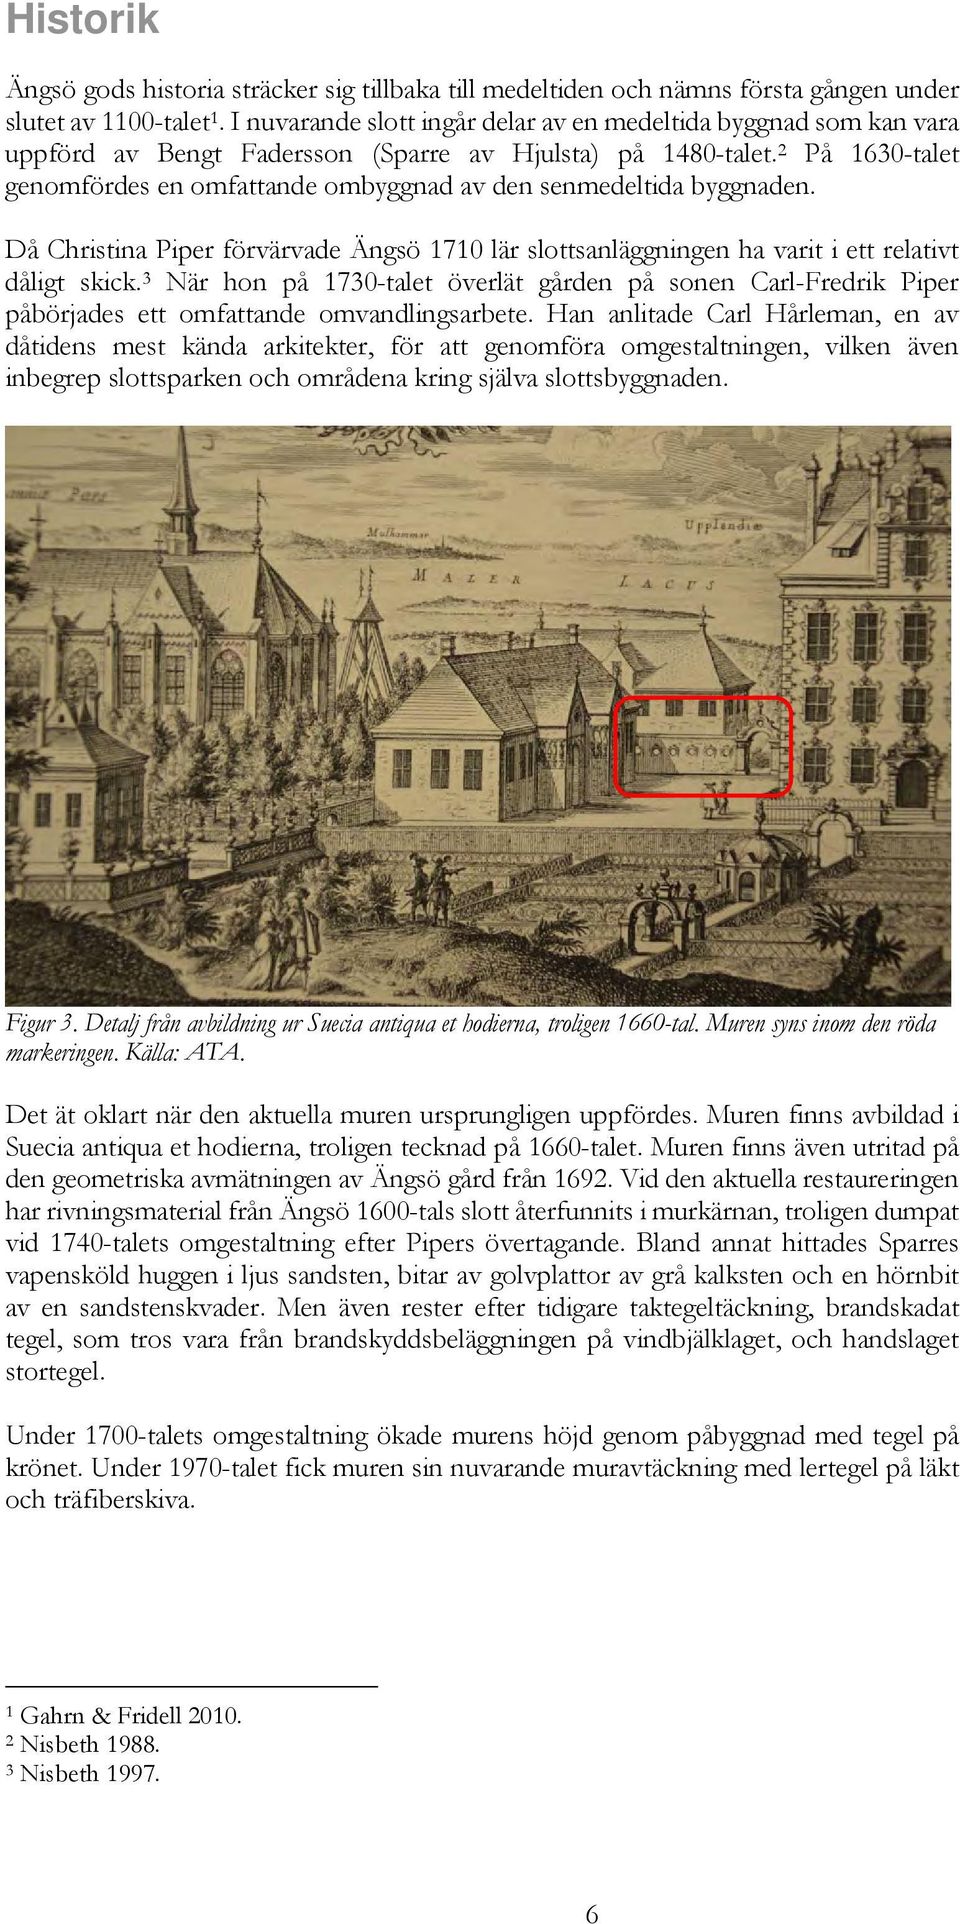 2 På 1630-talet genomfördes en omfattande ombyggnad av den senmedeltida byggnaden. Då Christina Piper förvärvade Ängsö 1710 lär slottsanläggningen ha varit i ett relativt dåligt skick.